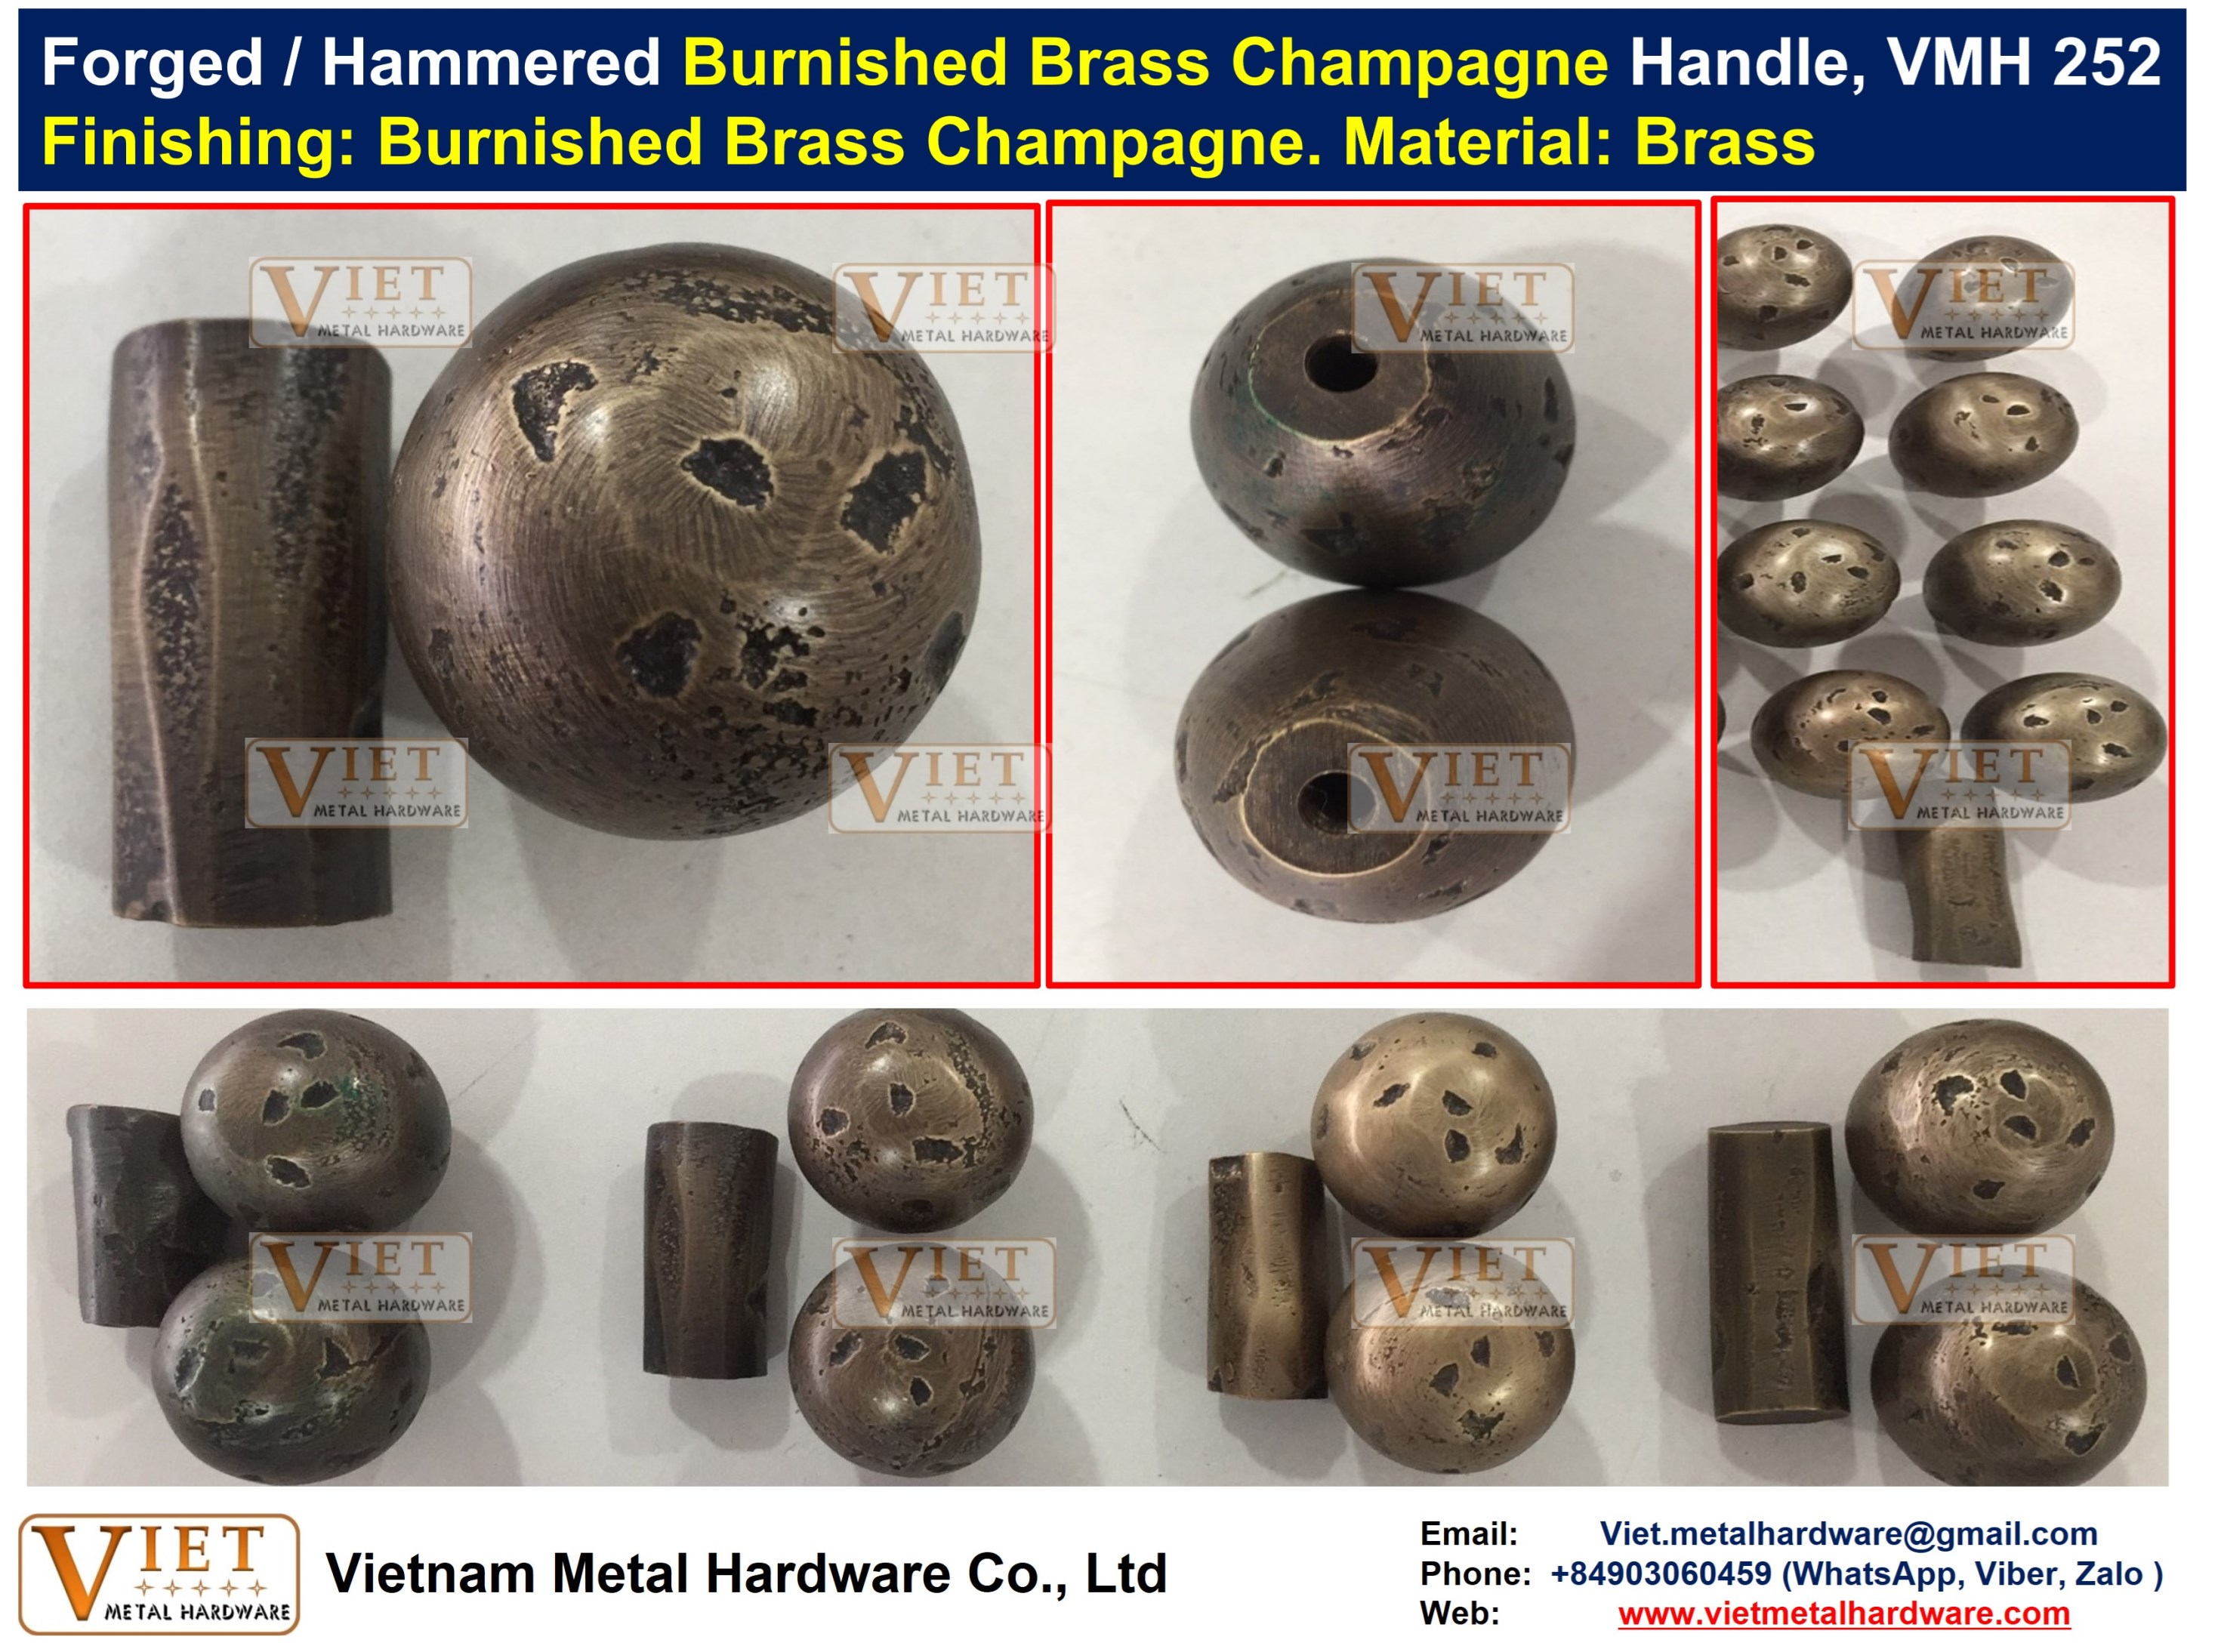 Forged / Hammered Cast Burnished Burnished Brass, Bronze, Dark